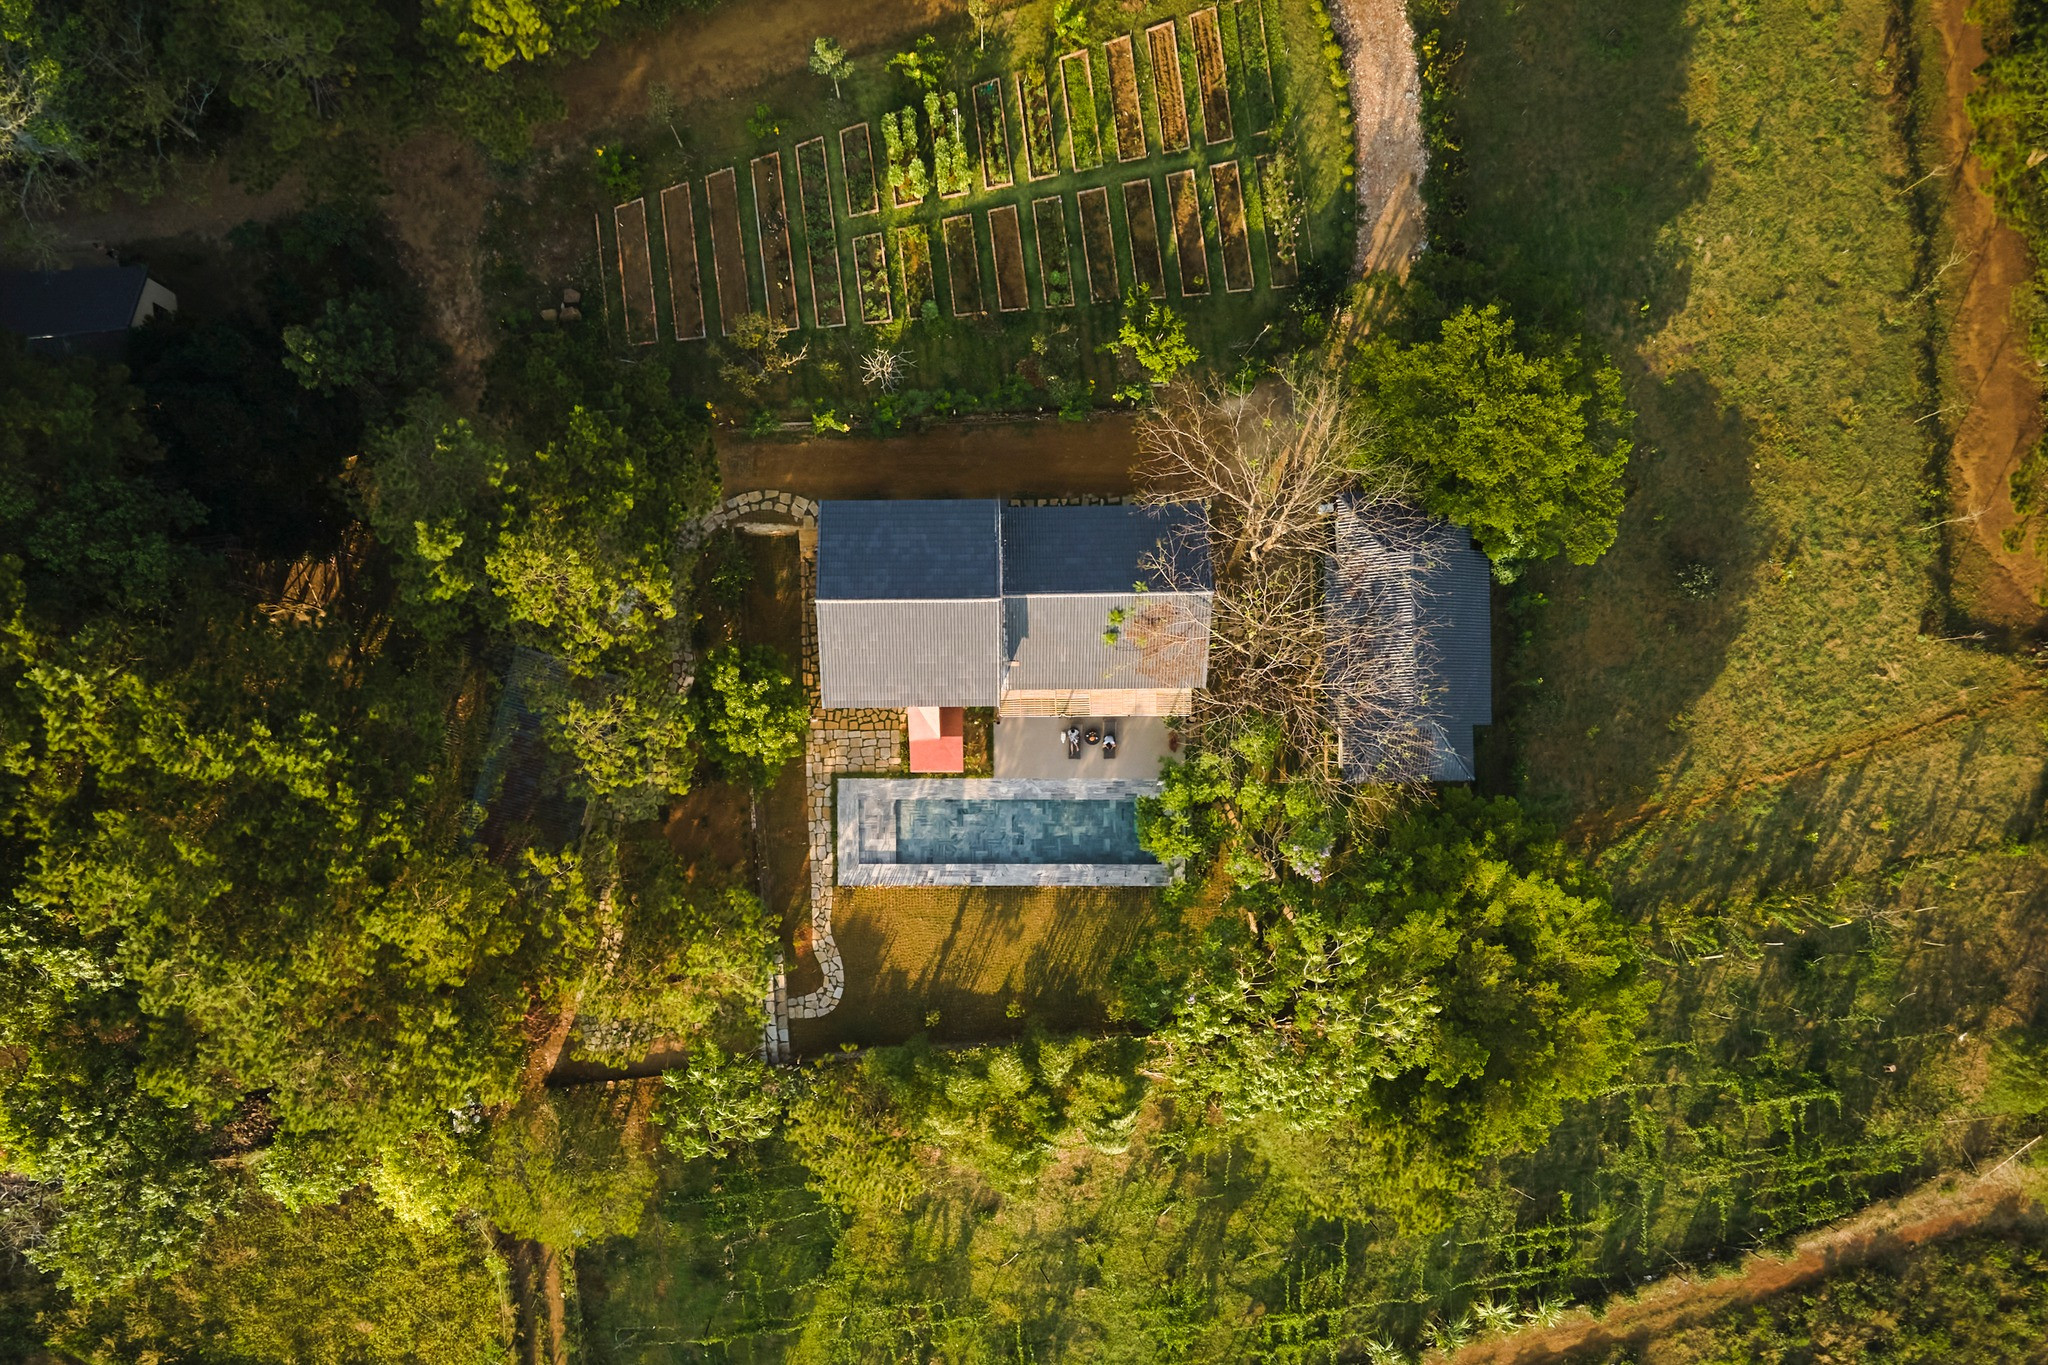 Ngôi nhà trên đỉnh đồi ở Bảo Lộc mang màu sắc vùng đất đỏ, tái sử dụng đồ cũ-1